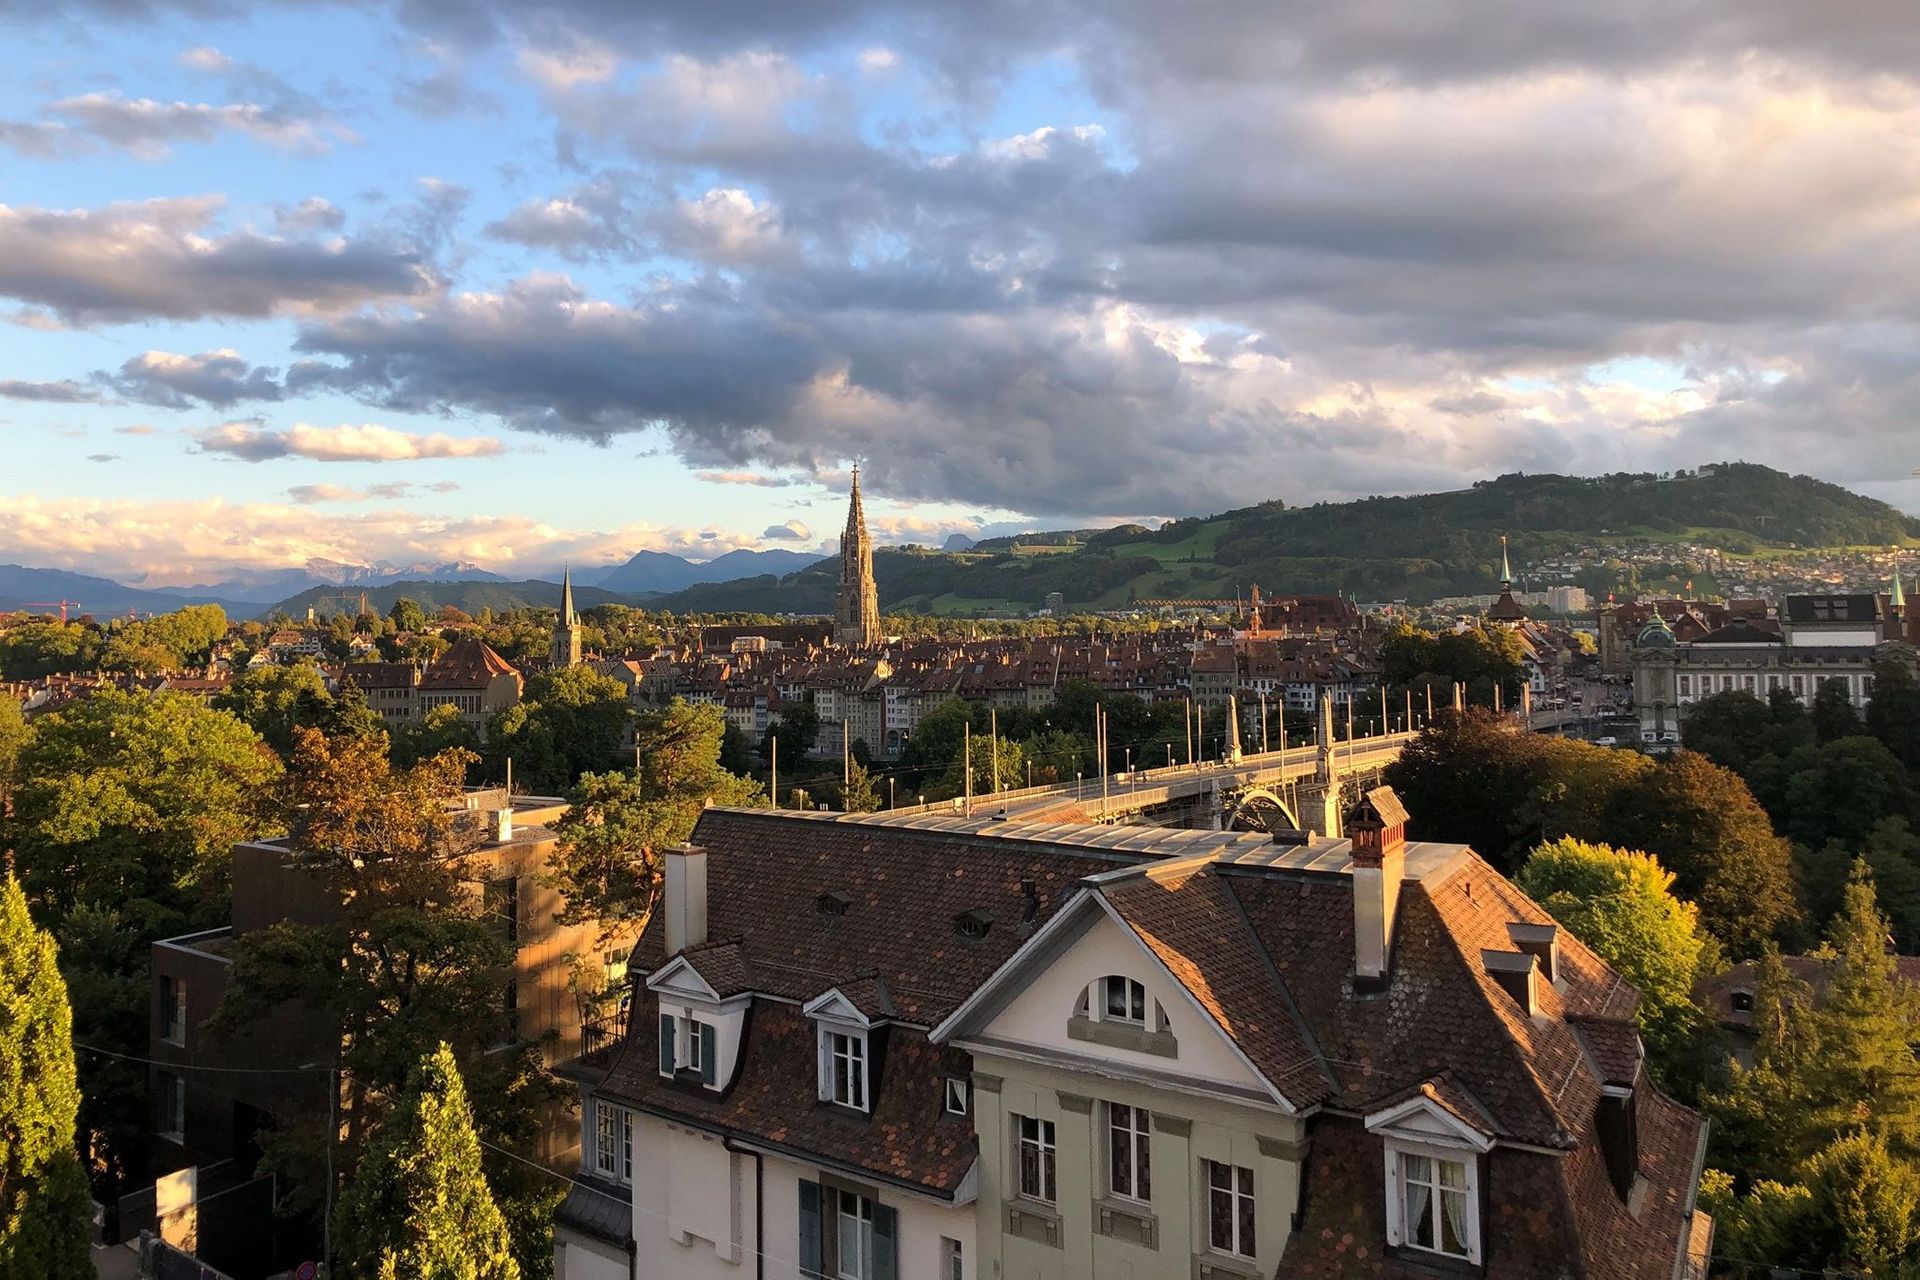 Coloratissima vista dall'alto di Berna, "città federale" della Svizzera: secondo una leggenda locale, Berthold V di Zähringen, fondatore della città, scelse come nome quello del primo animale che incontrò a caccia, che si rivelò essere un orso (Bär)